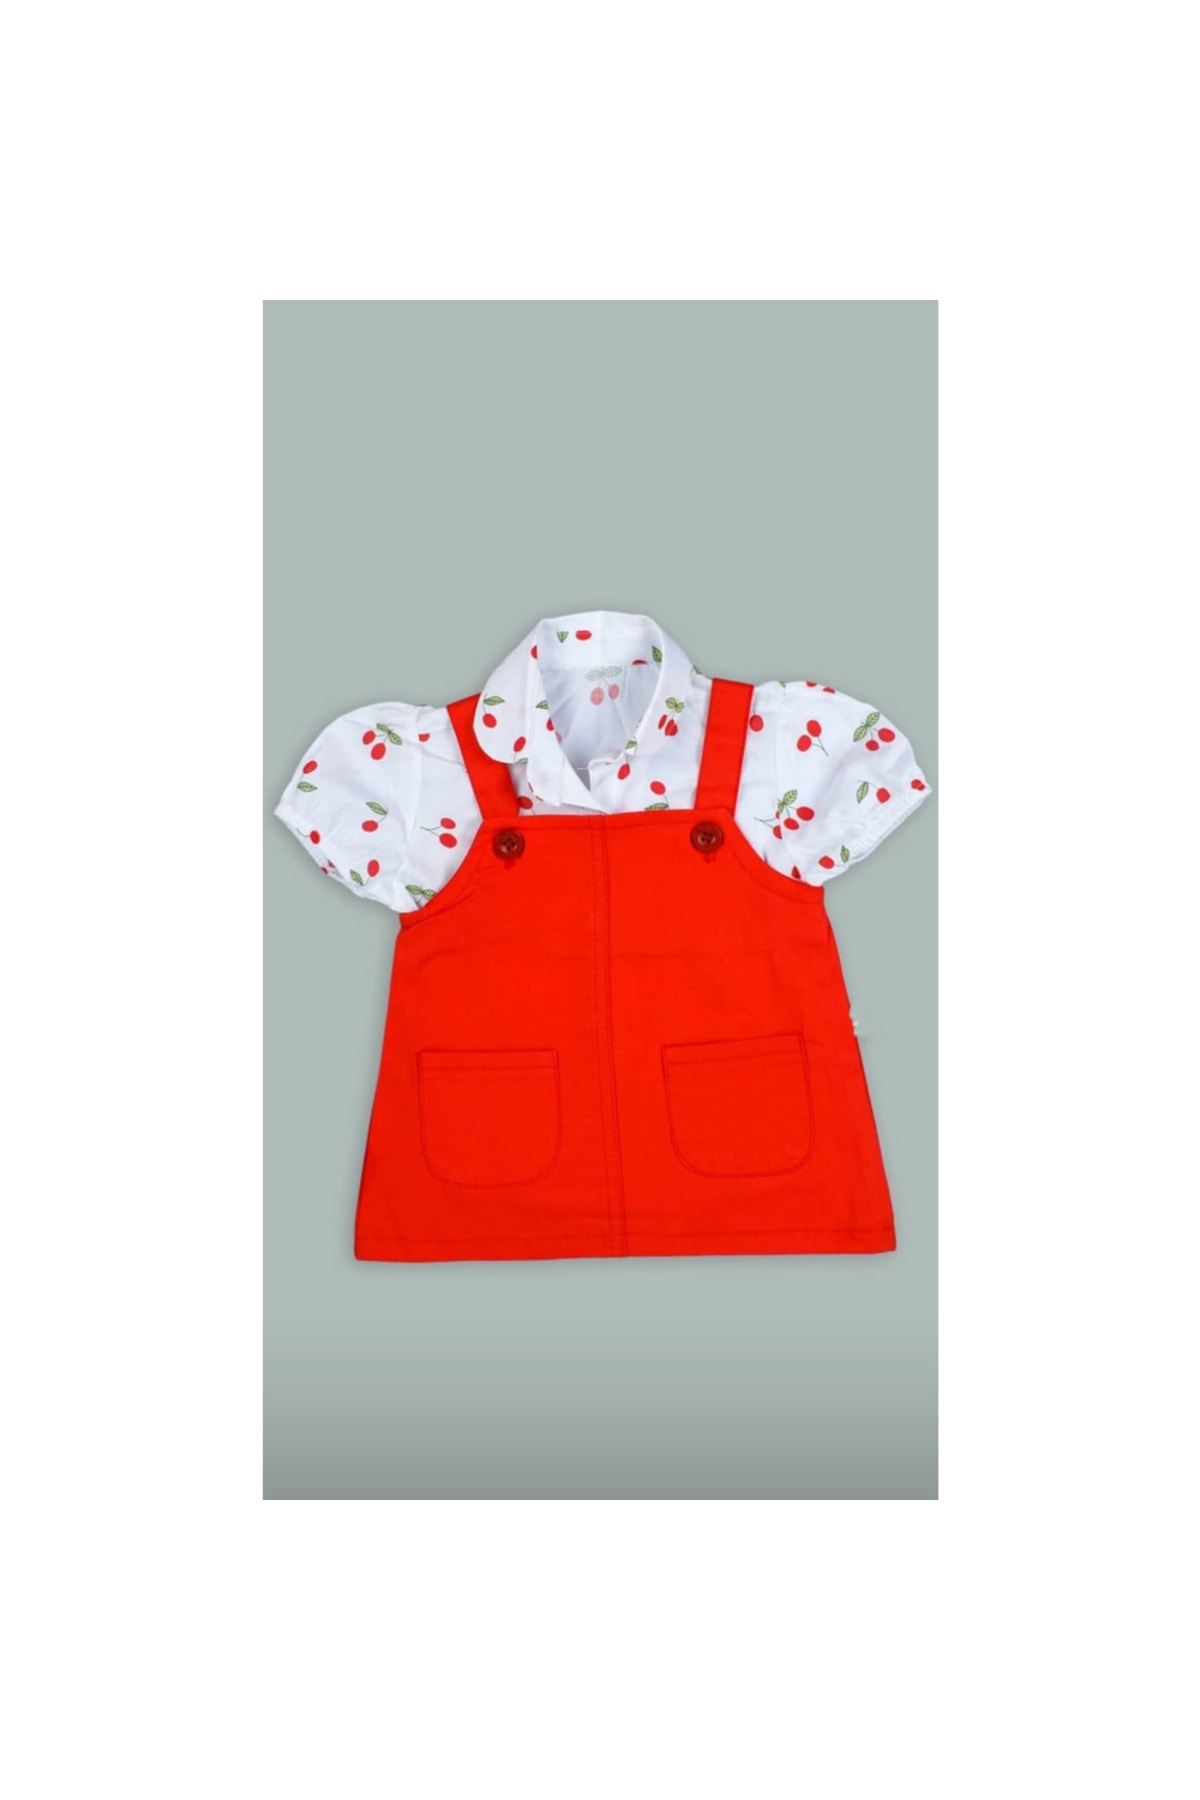 Şirin Şeyler Butiği Aline Kız Bebek Çocuk Kısa Kol Kiraz Elbise Kiraz Salopet Kırmızı 2'li Alt Üst Takım Kirazli Elbise OR10598